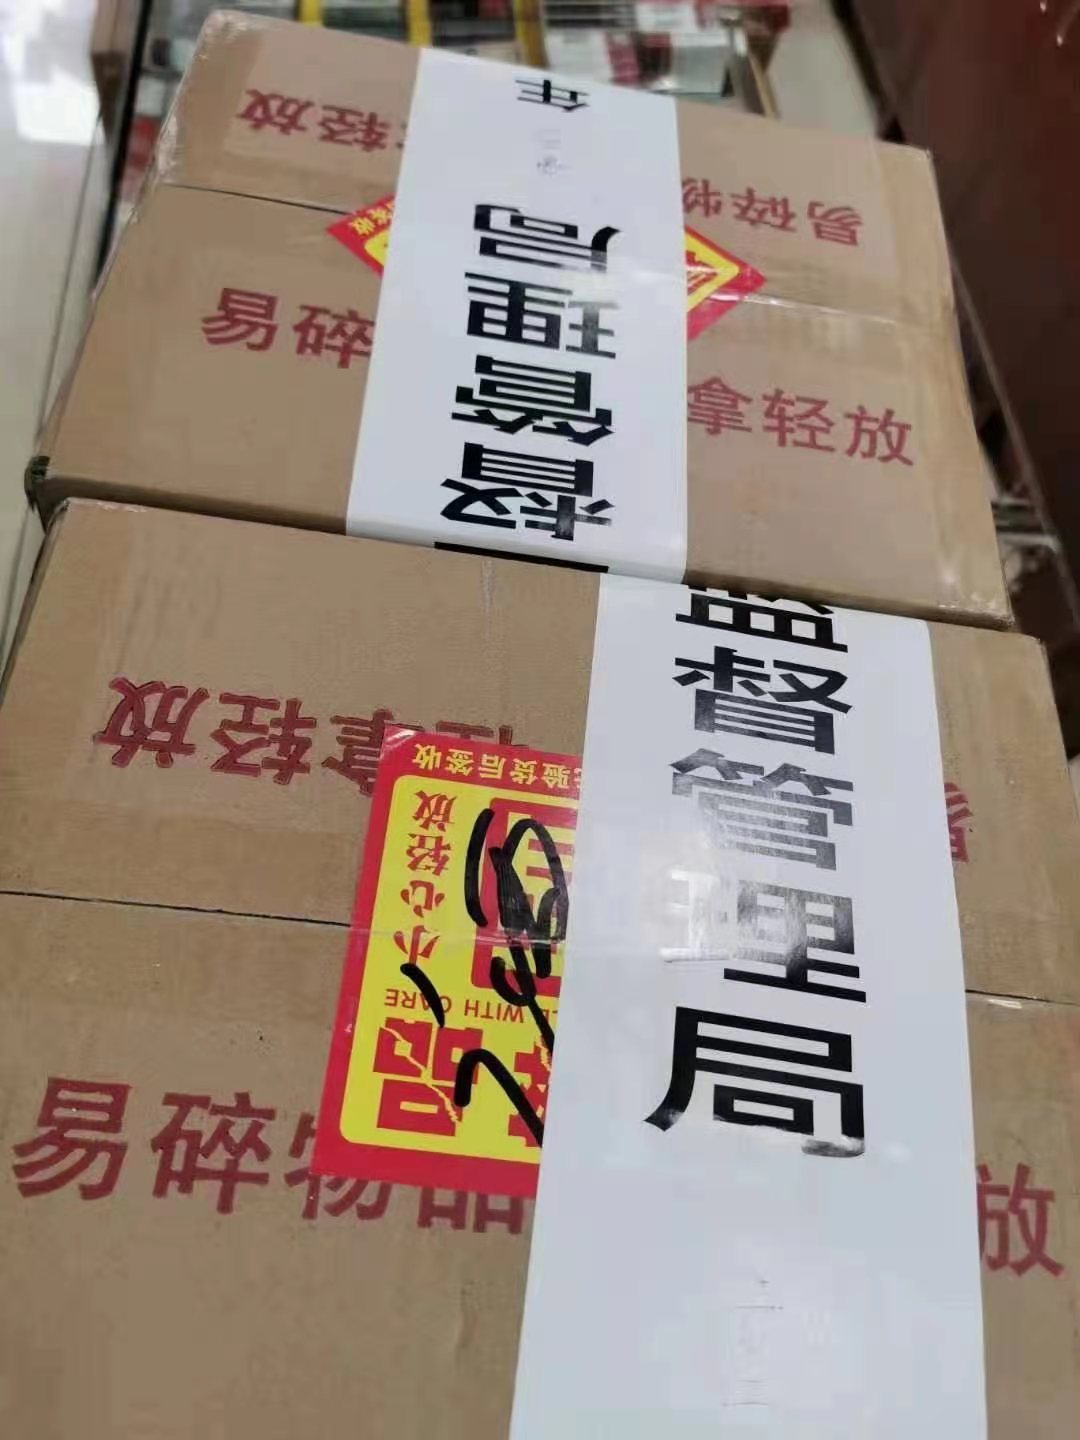 上海严打茅台炒作 售价超1499没收 批发商：茅台与本地工商联合打击